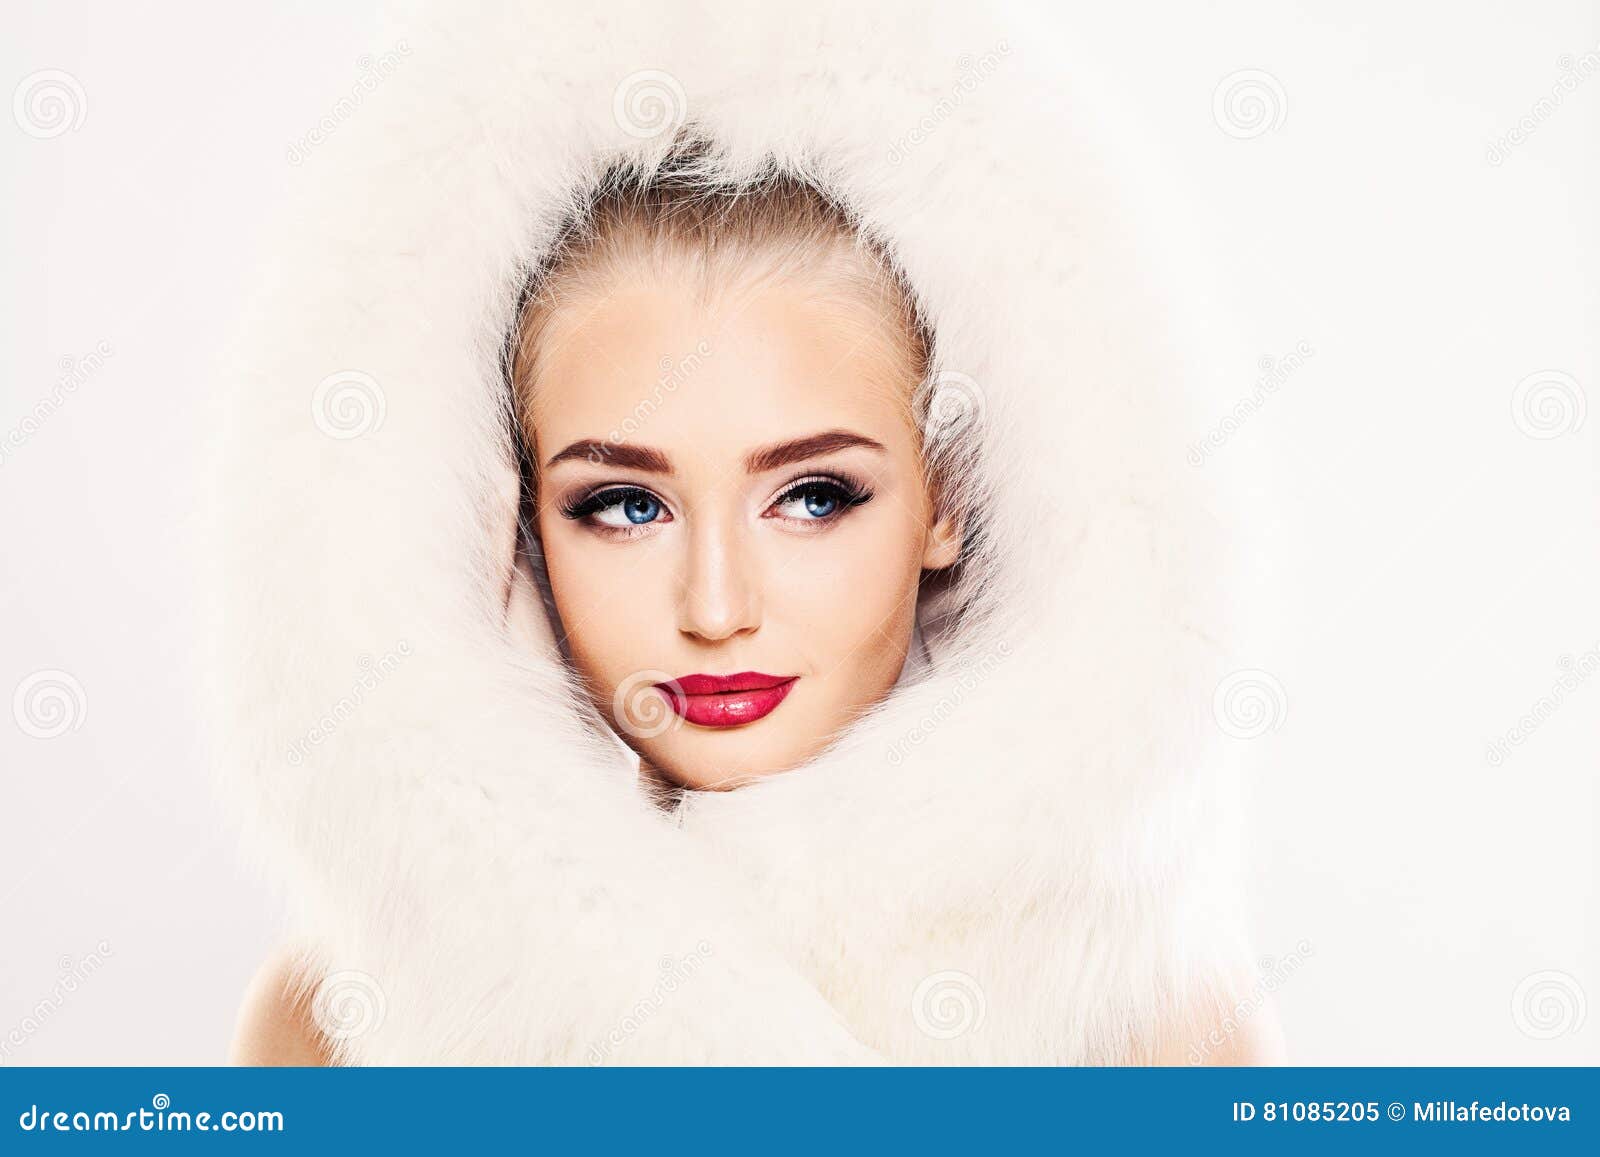 Woman Winter Fashion Beautiful 41